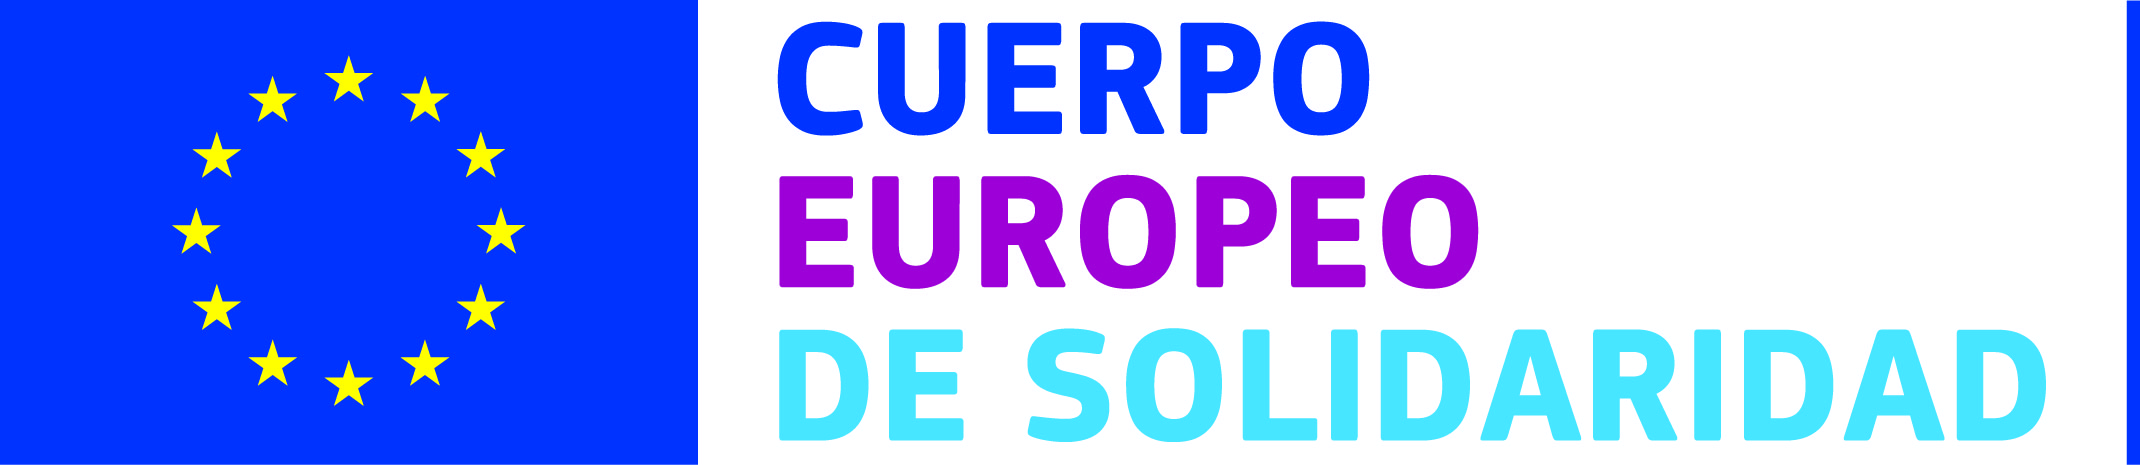 Cuerpo Europeo de Solidaridad (CES)